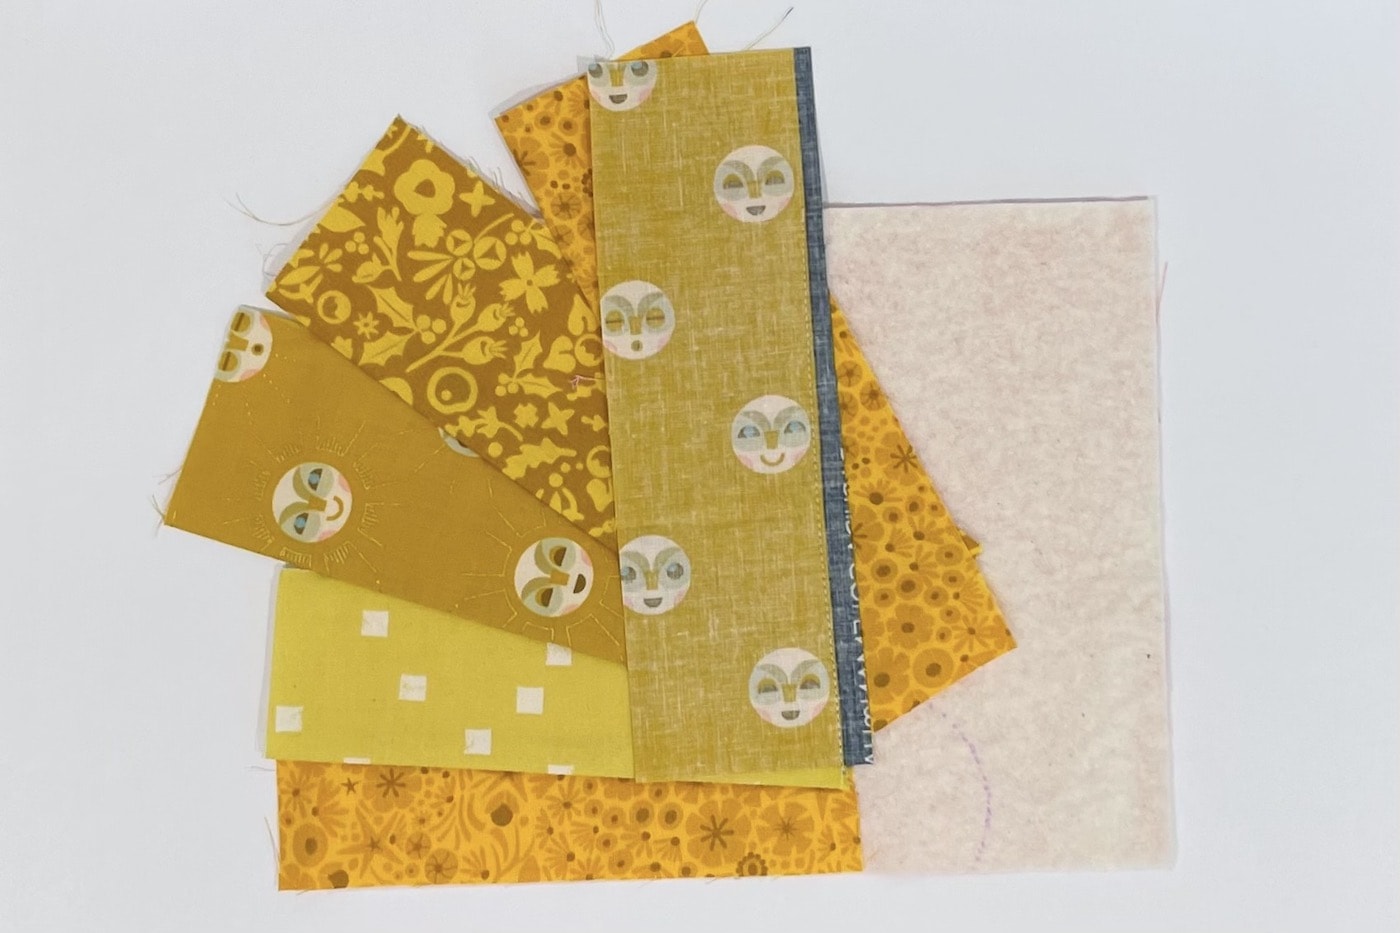 étapes de construction d'un tapis mug avec des bandes de divers imprimés de tissus jaunes sur une table blanche